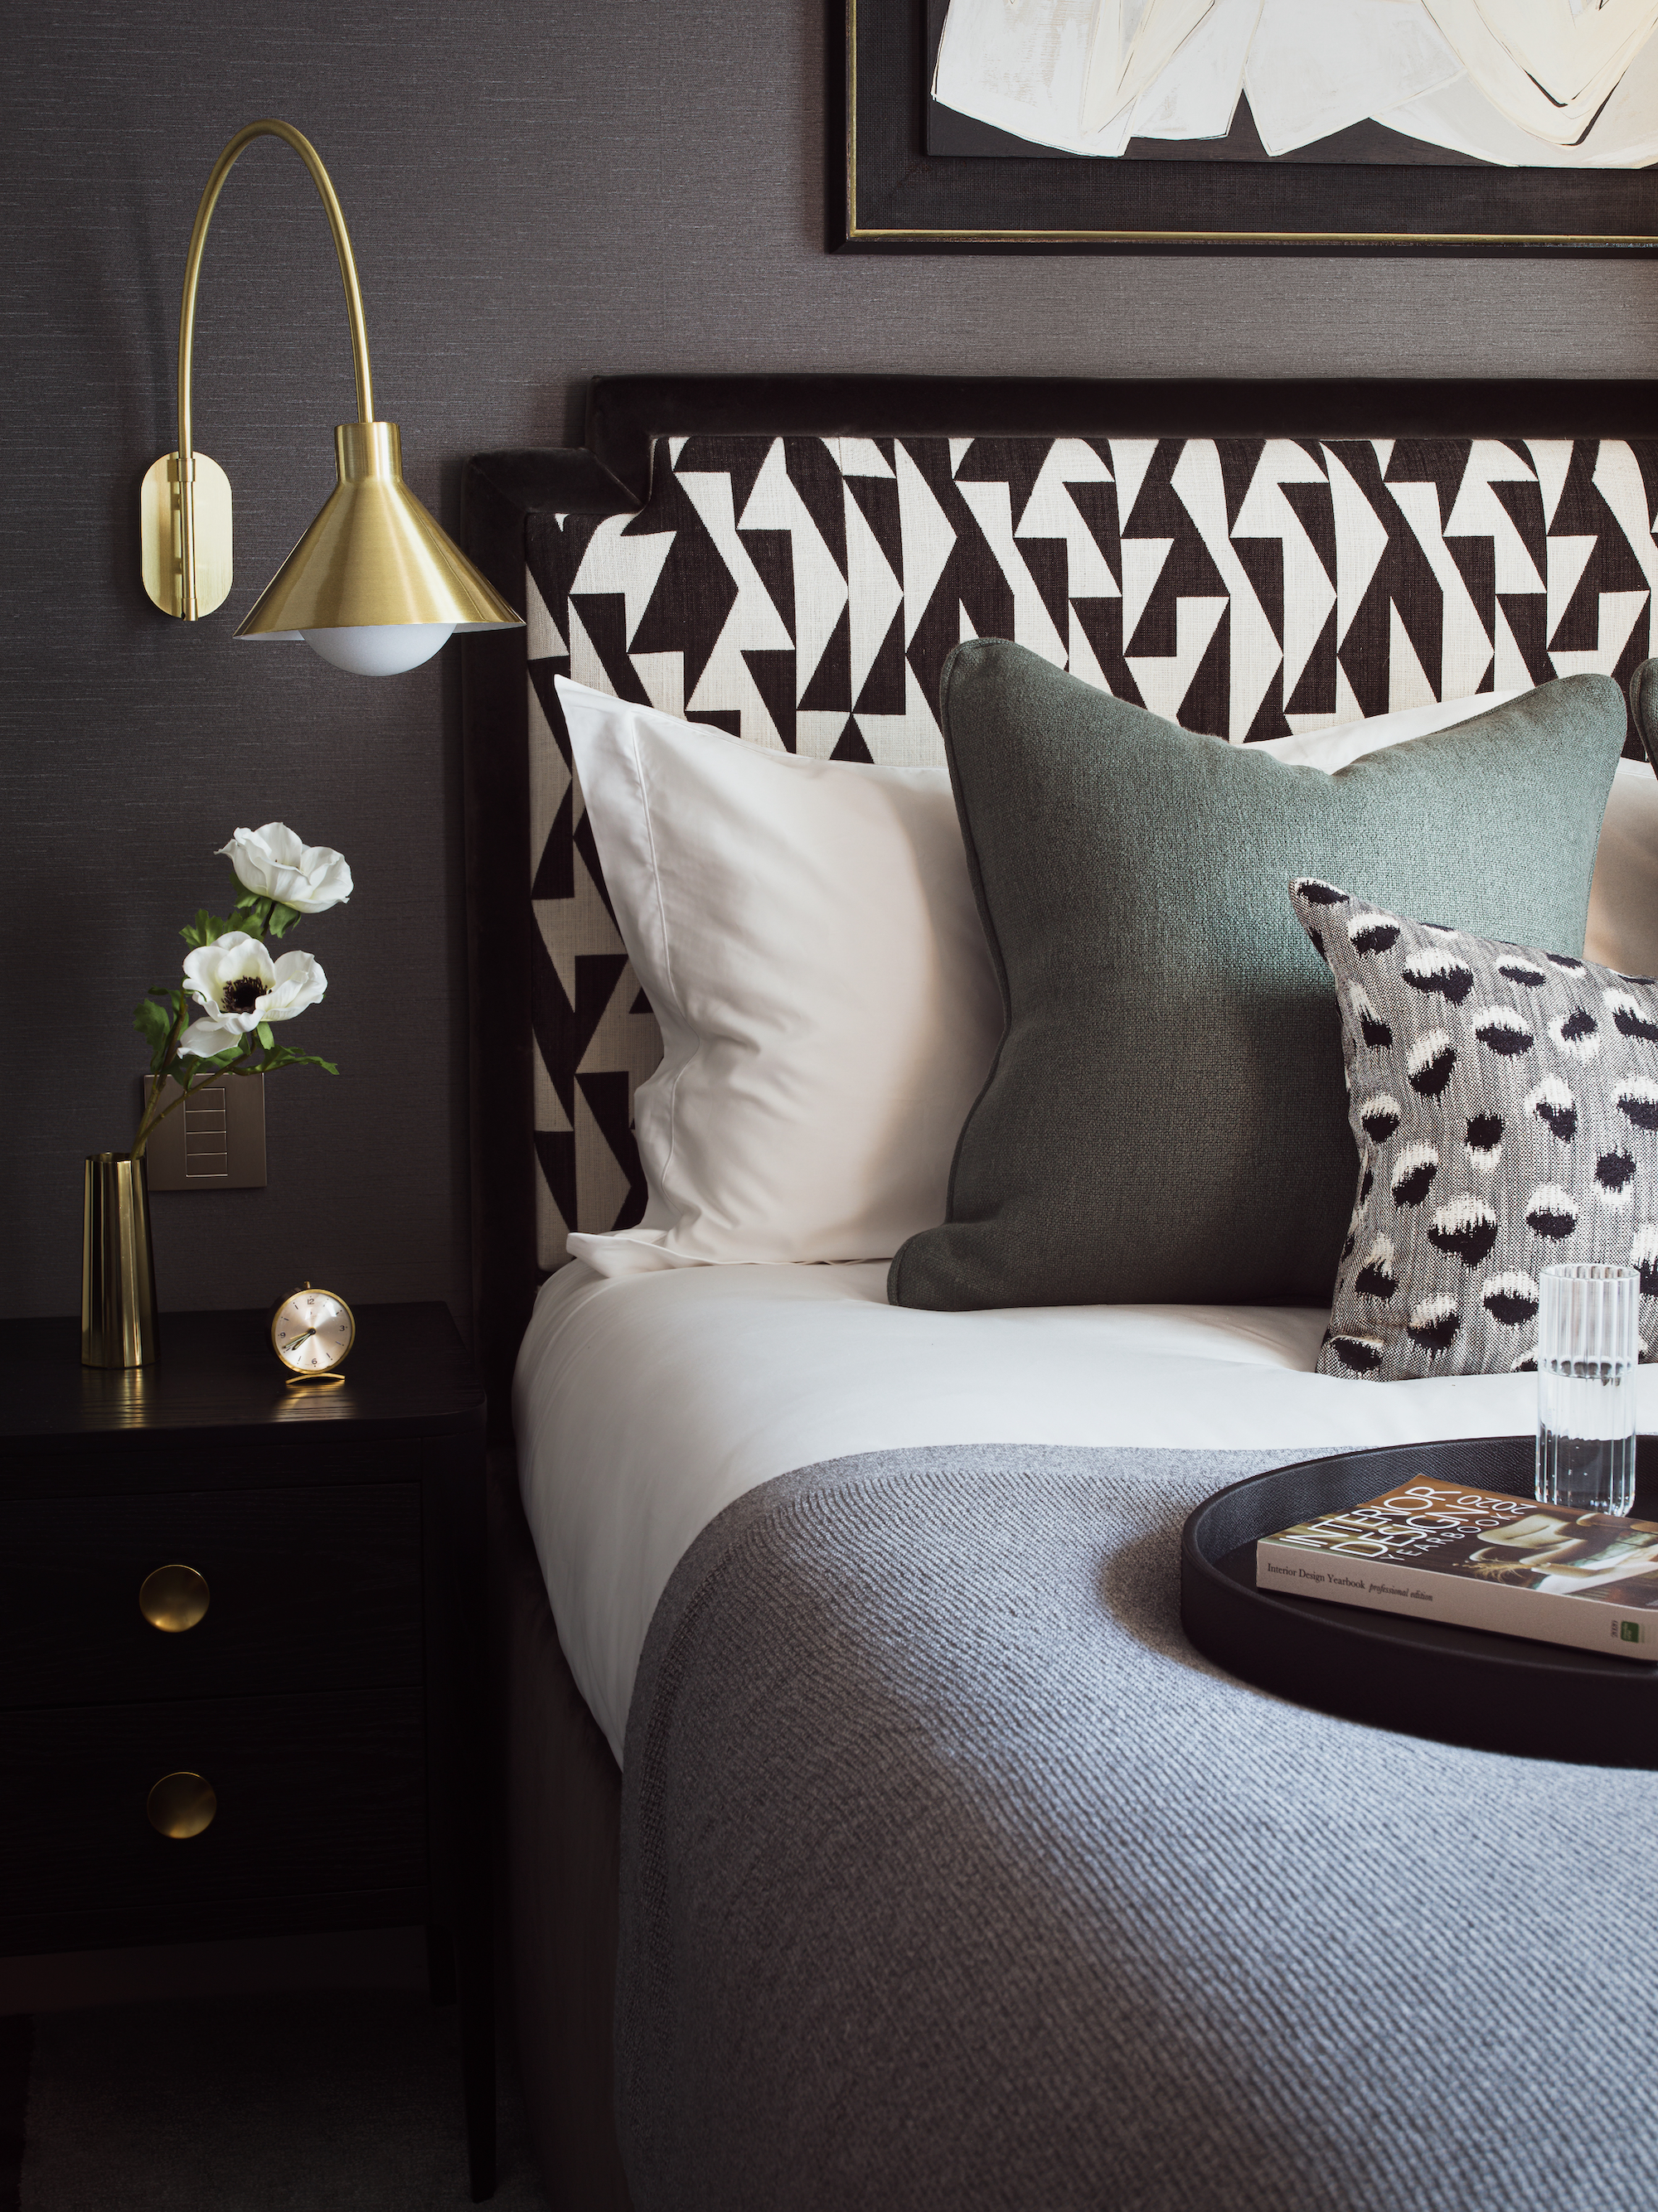 dormitorio en blanco y negro con cabecero estampado, cojines grises y blancos, cabecera negra, lámpara de pared dorada, obras de arte